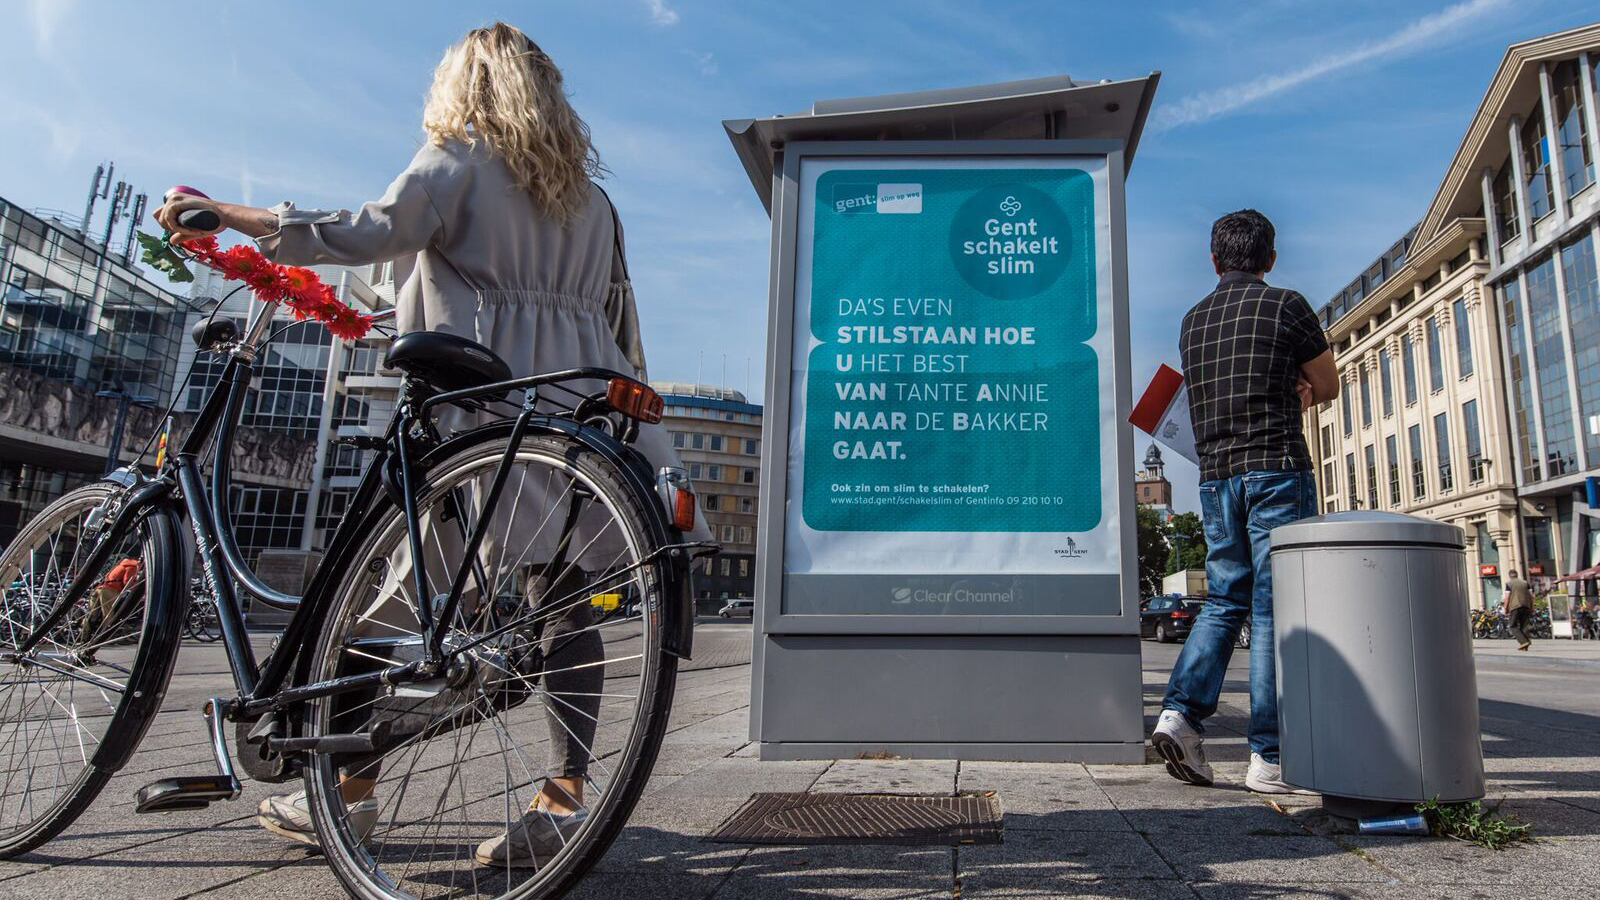 Affiche voor campagne rond nieuw circulatieplan in Stad Gent